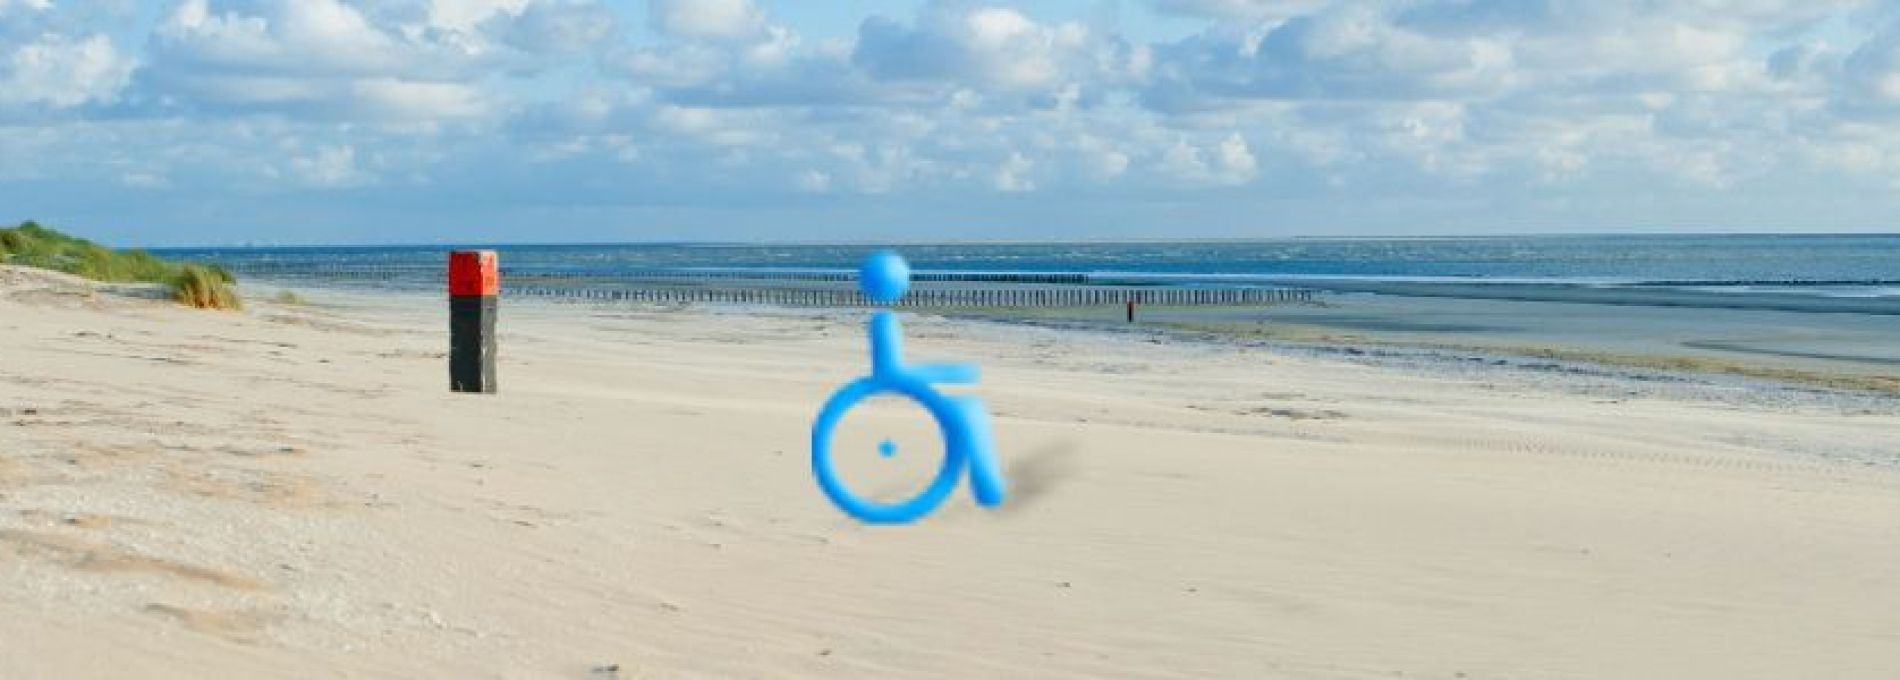 Häufig gestellte Fragen über Urlaub im Rollstuhl auf Ameland - VVV Ameland.